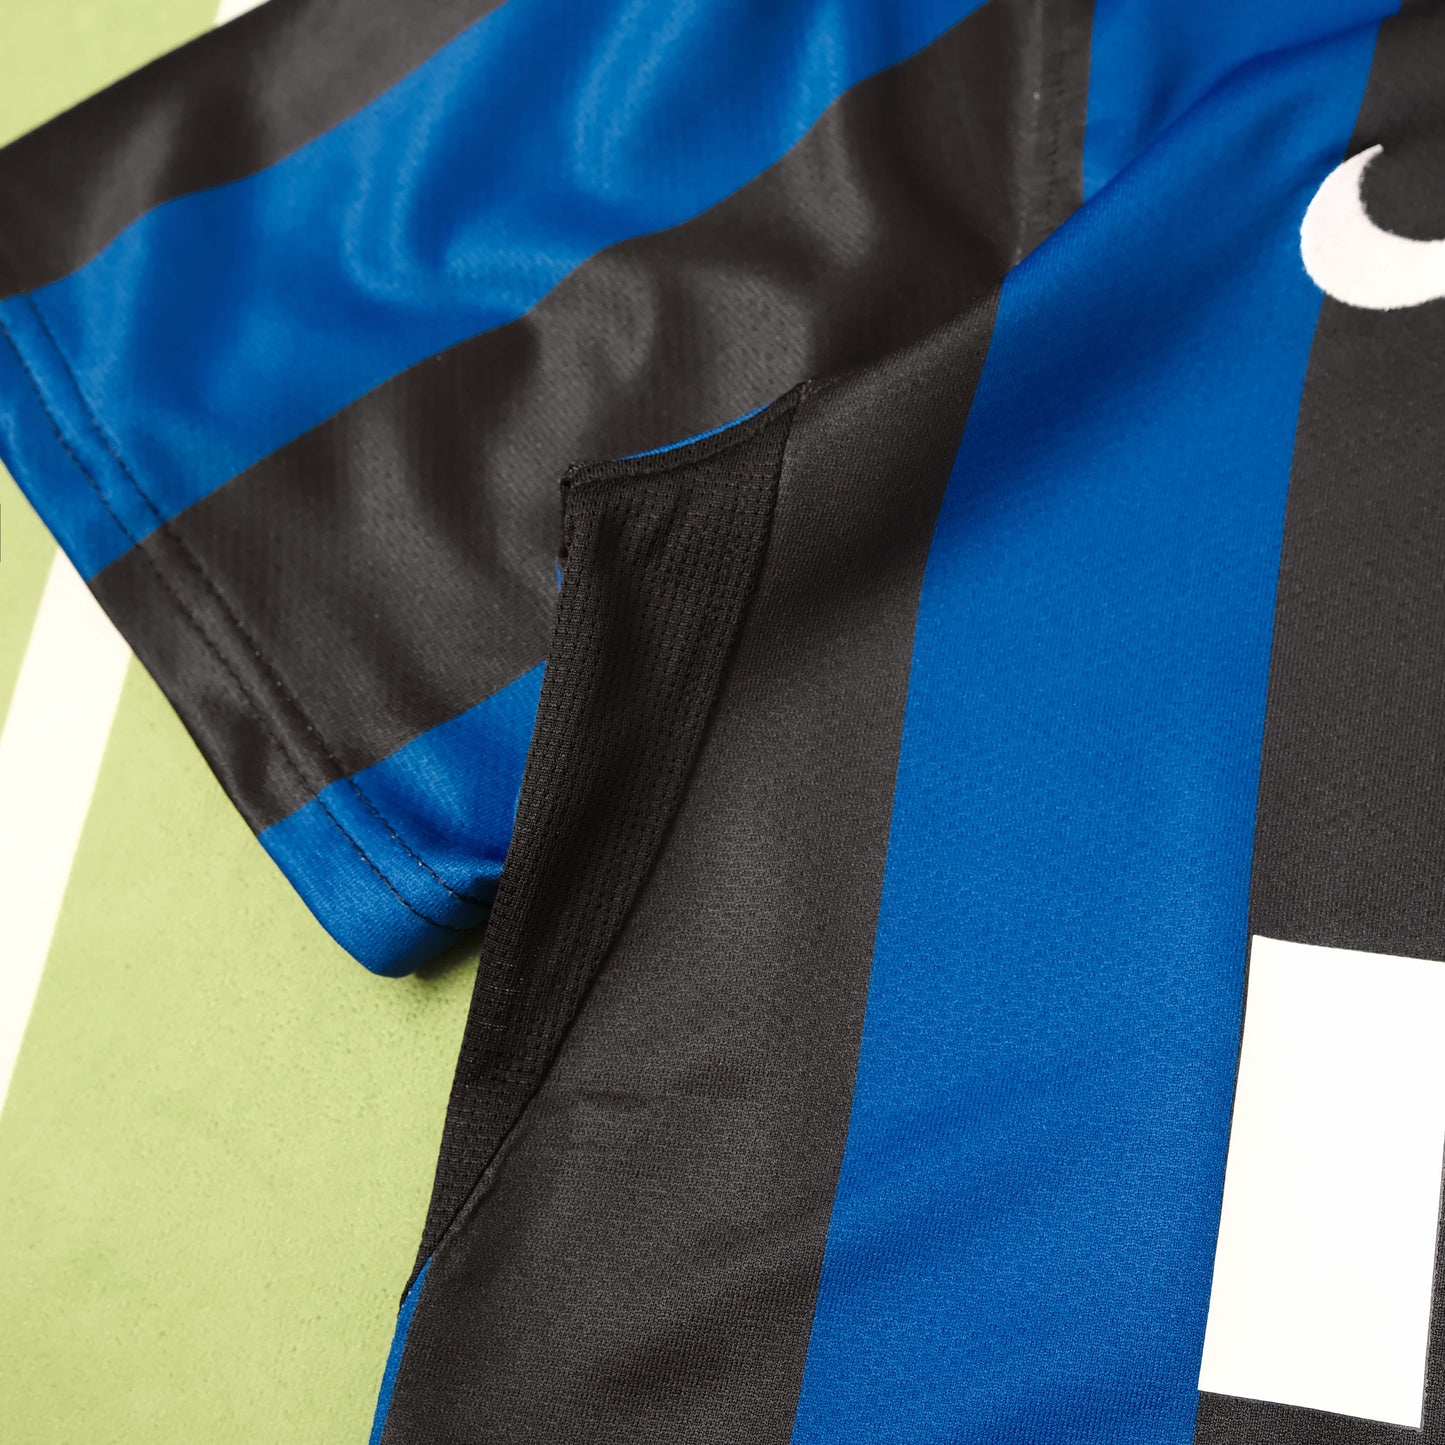 Inter Milan 07-08 Home Shirt